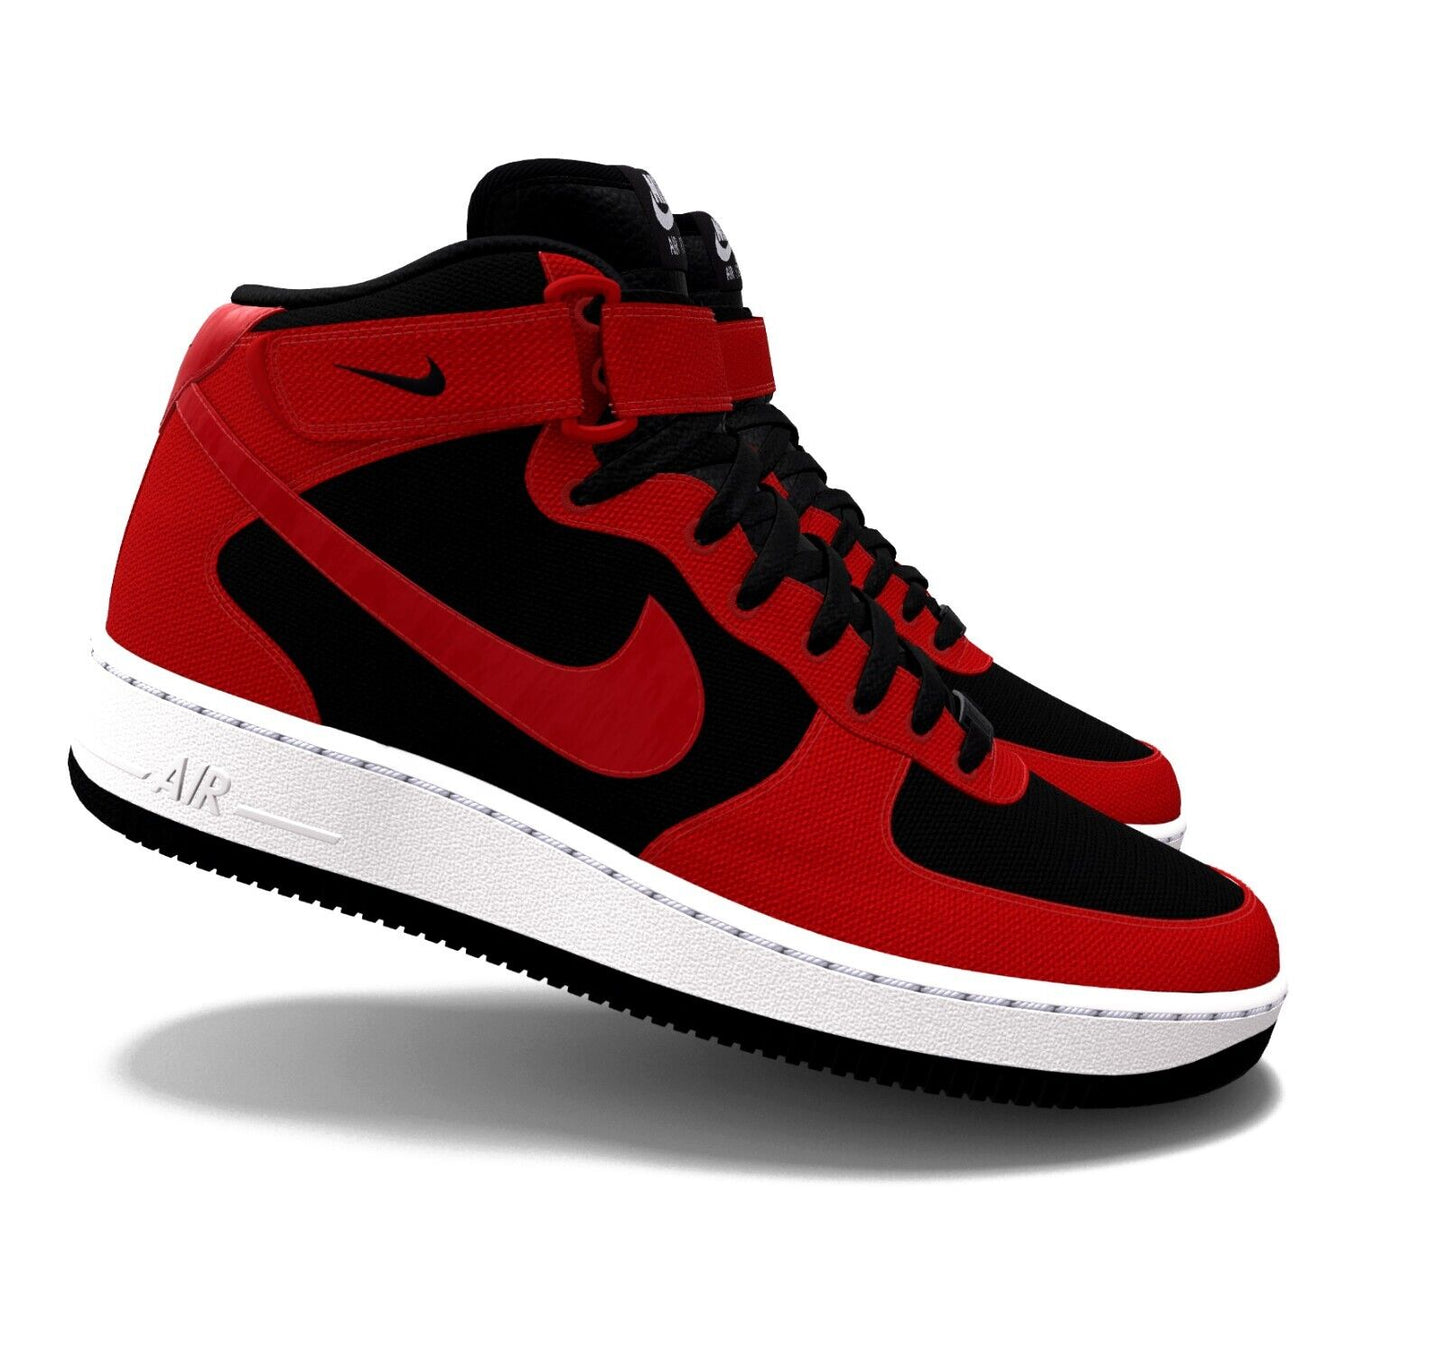 $215 NIB Mens NIKE Air Force 1 MID Black & Red Custom Canvas Basketball Shoes